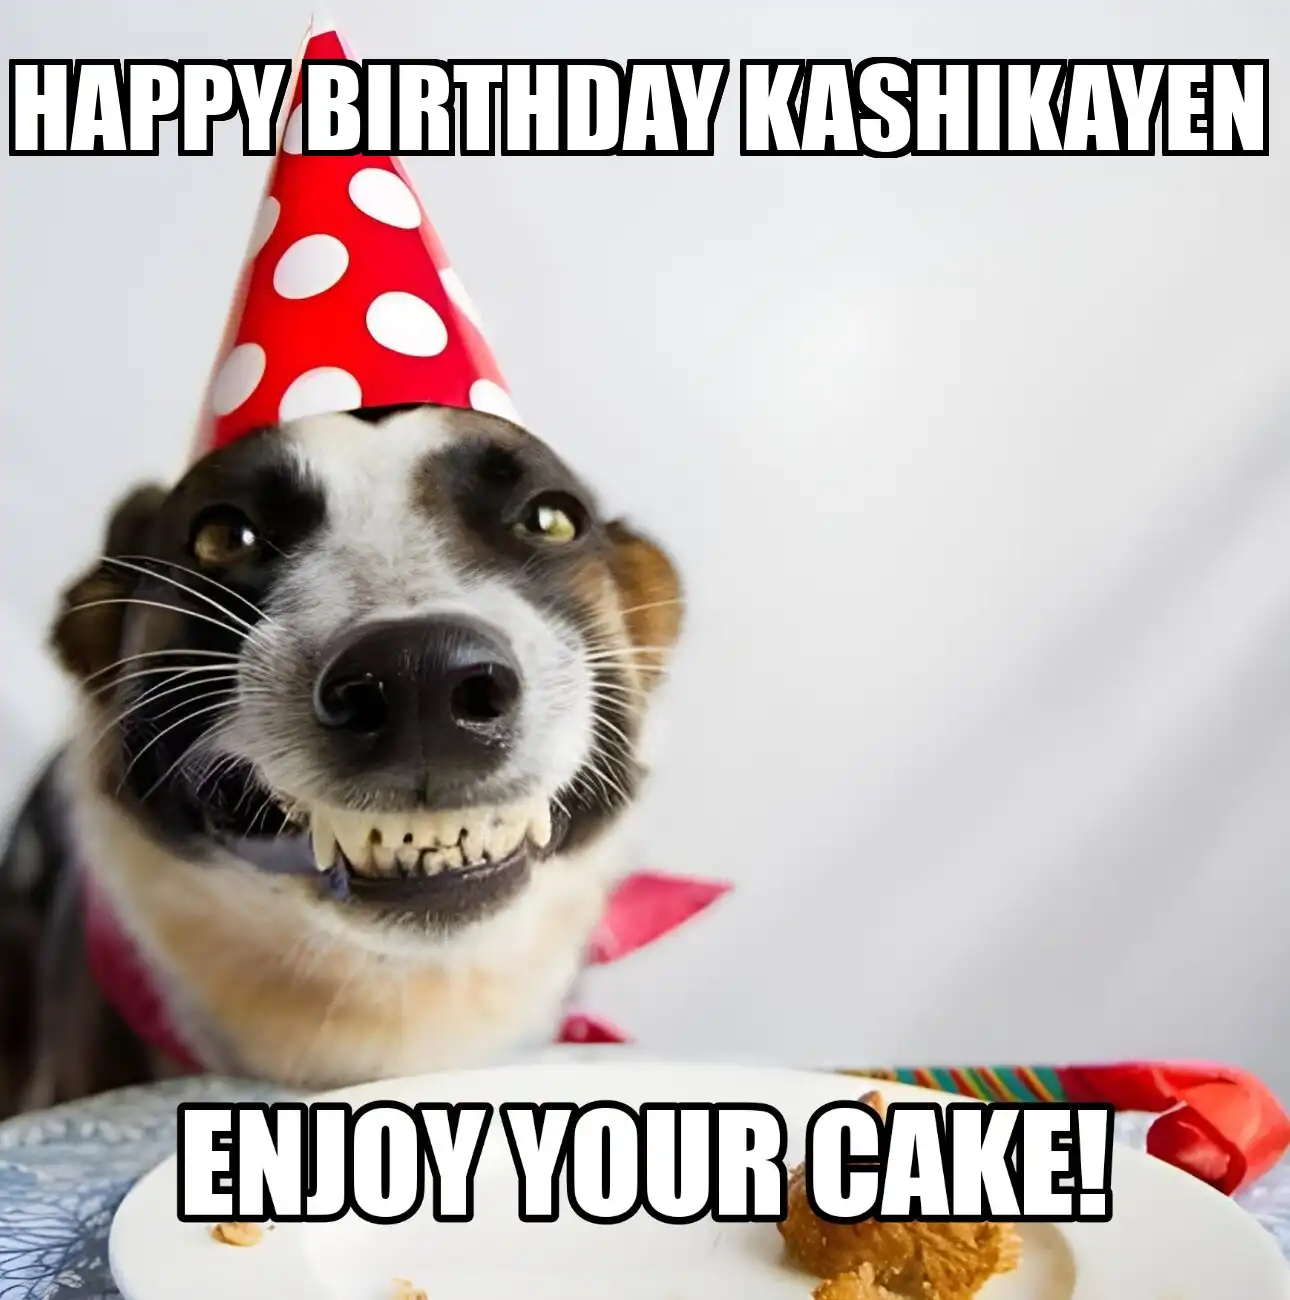 Happy Birthday Kashikayen Enjoy Your Cake Dog Meme